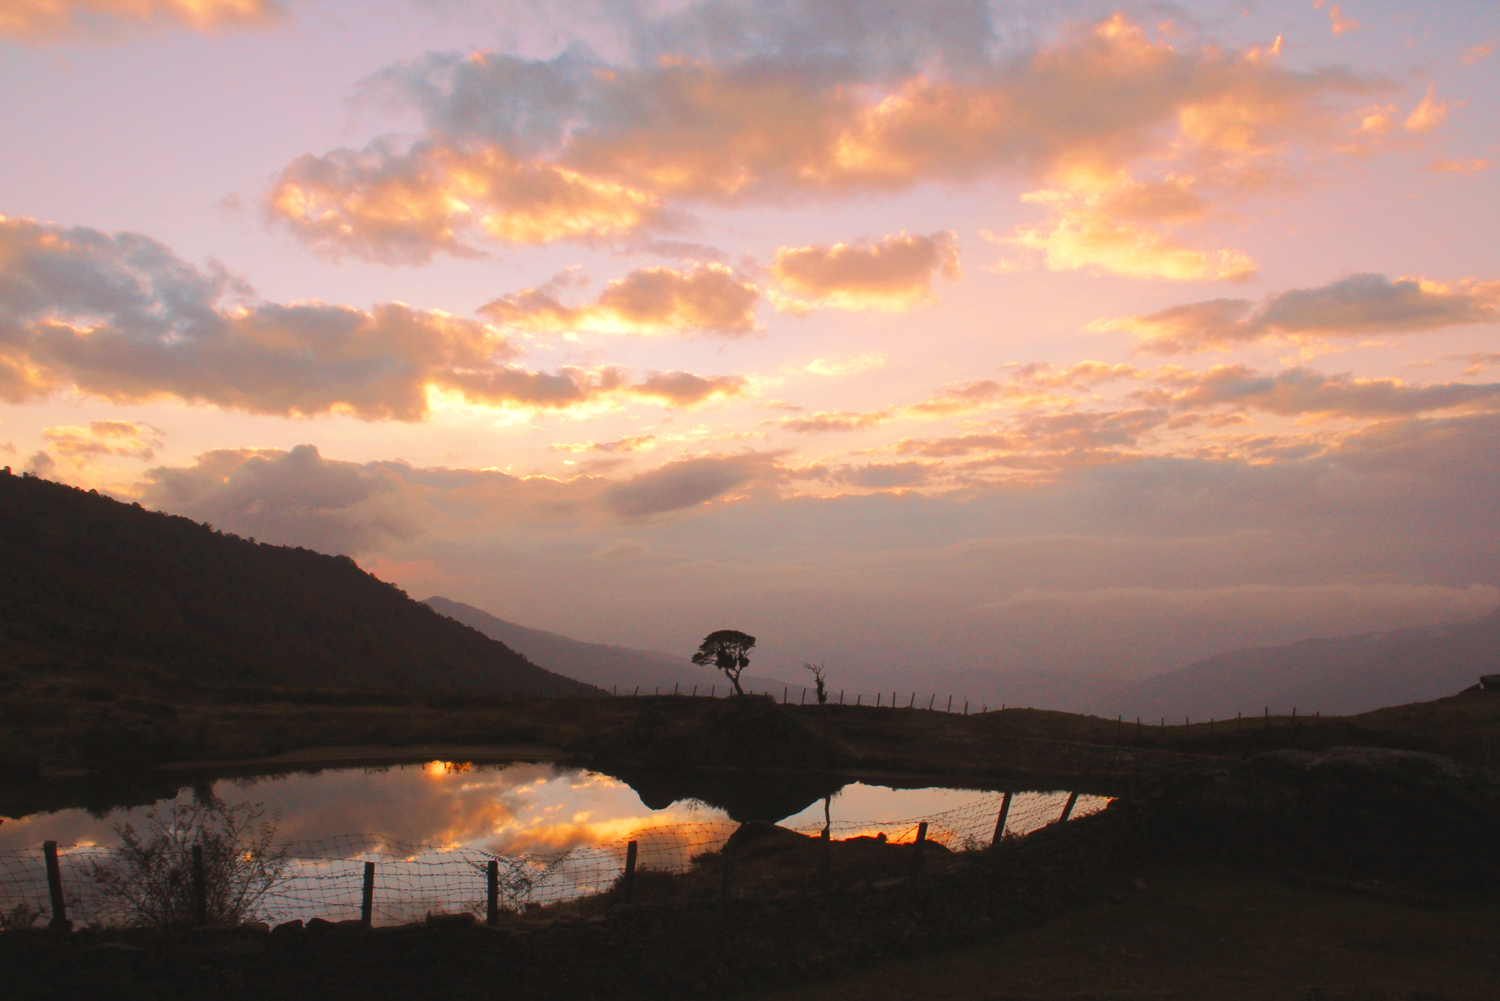 Nepal.EastNepal.GuphaPokhari.Sunset.Reflection.Clouds1.jpg